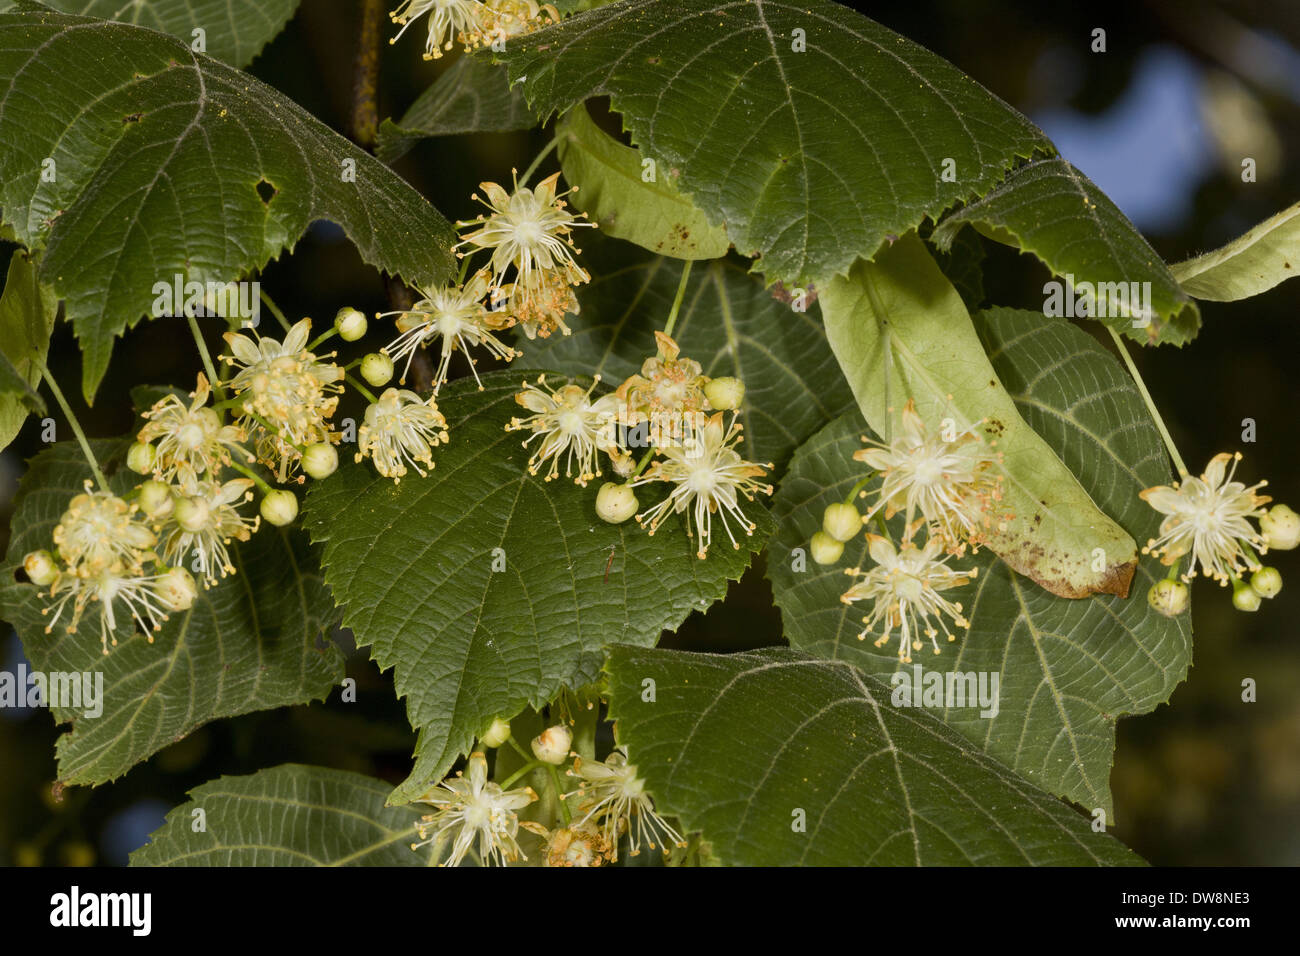 Large blätterte Linde (Tilia Platyphyllos) Nahaufnahme der Blüten und Blätter Zentralfrankreich Juni Stockfoto